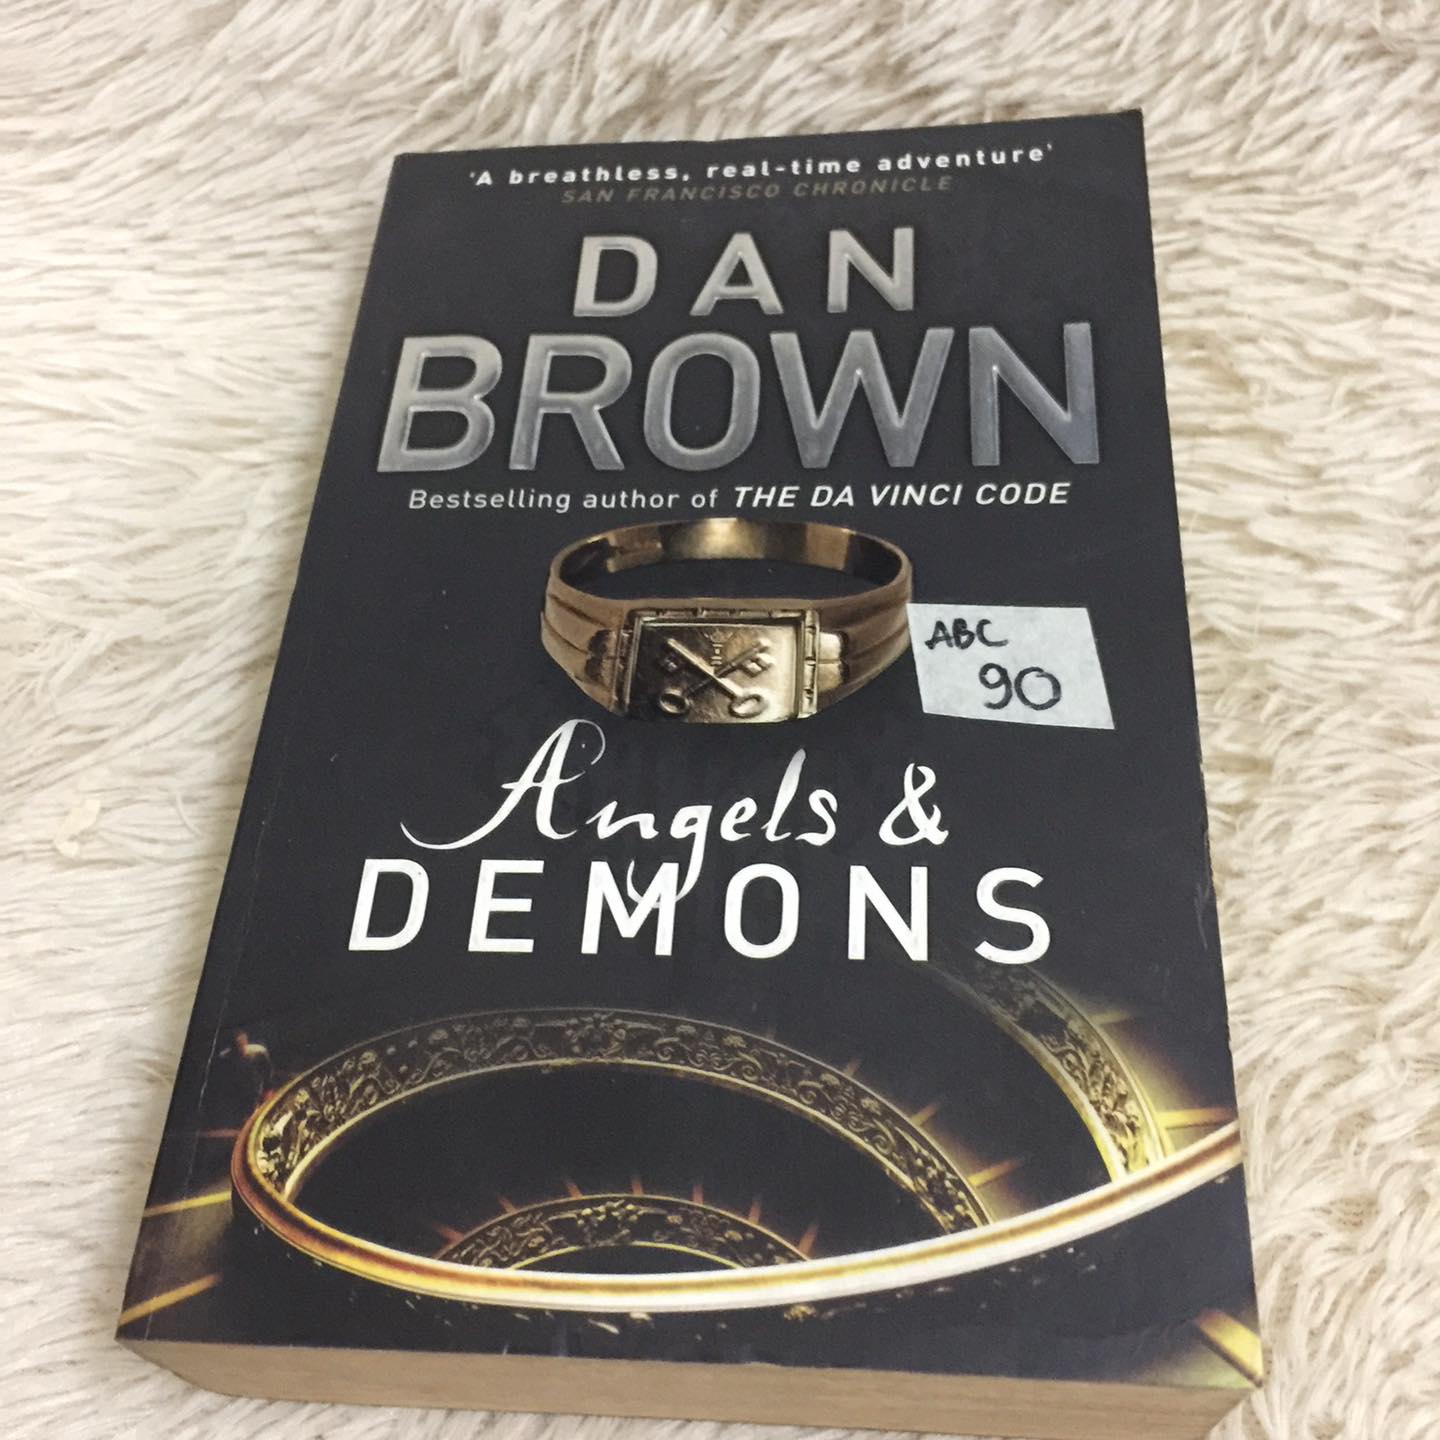 dan brown angels and demons book